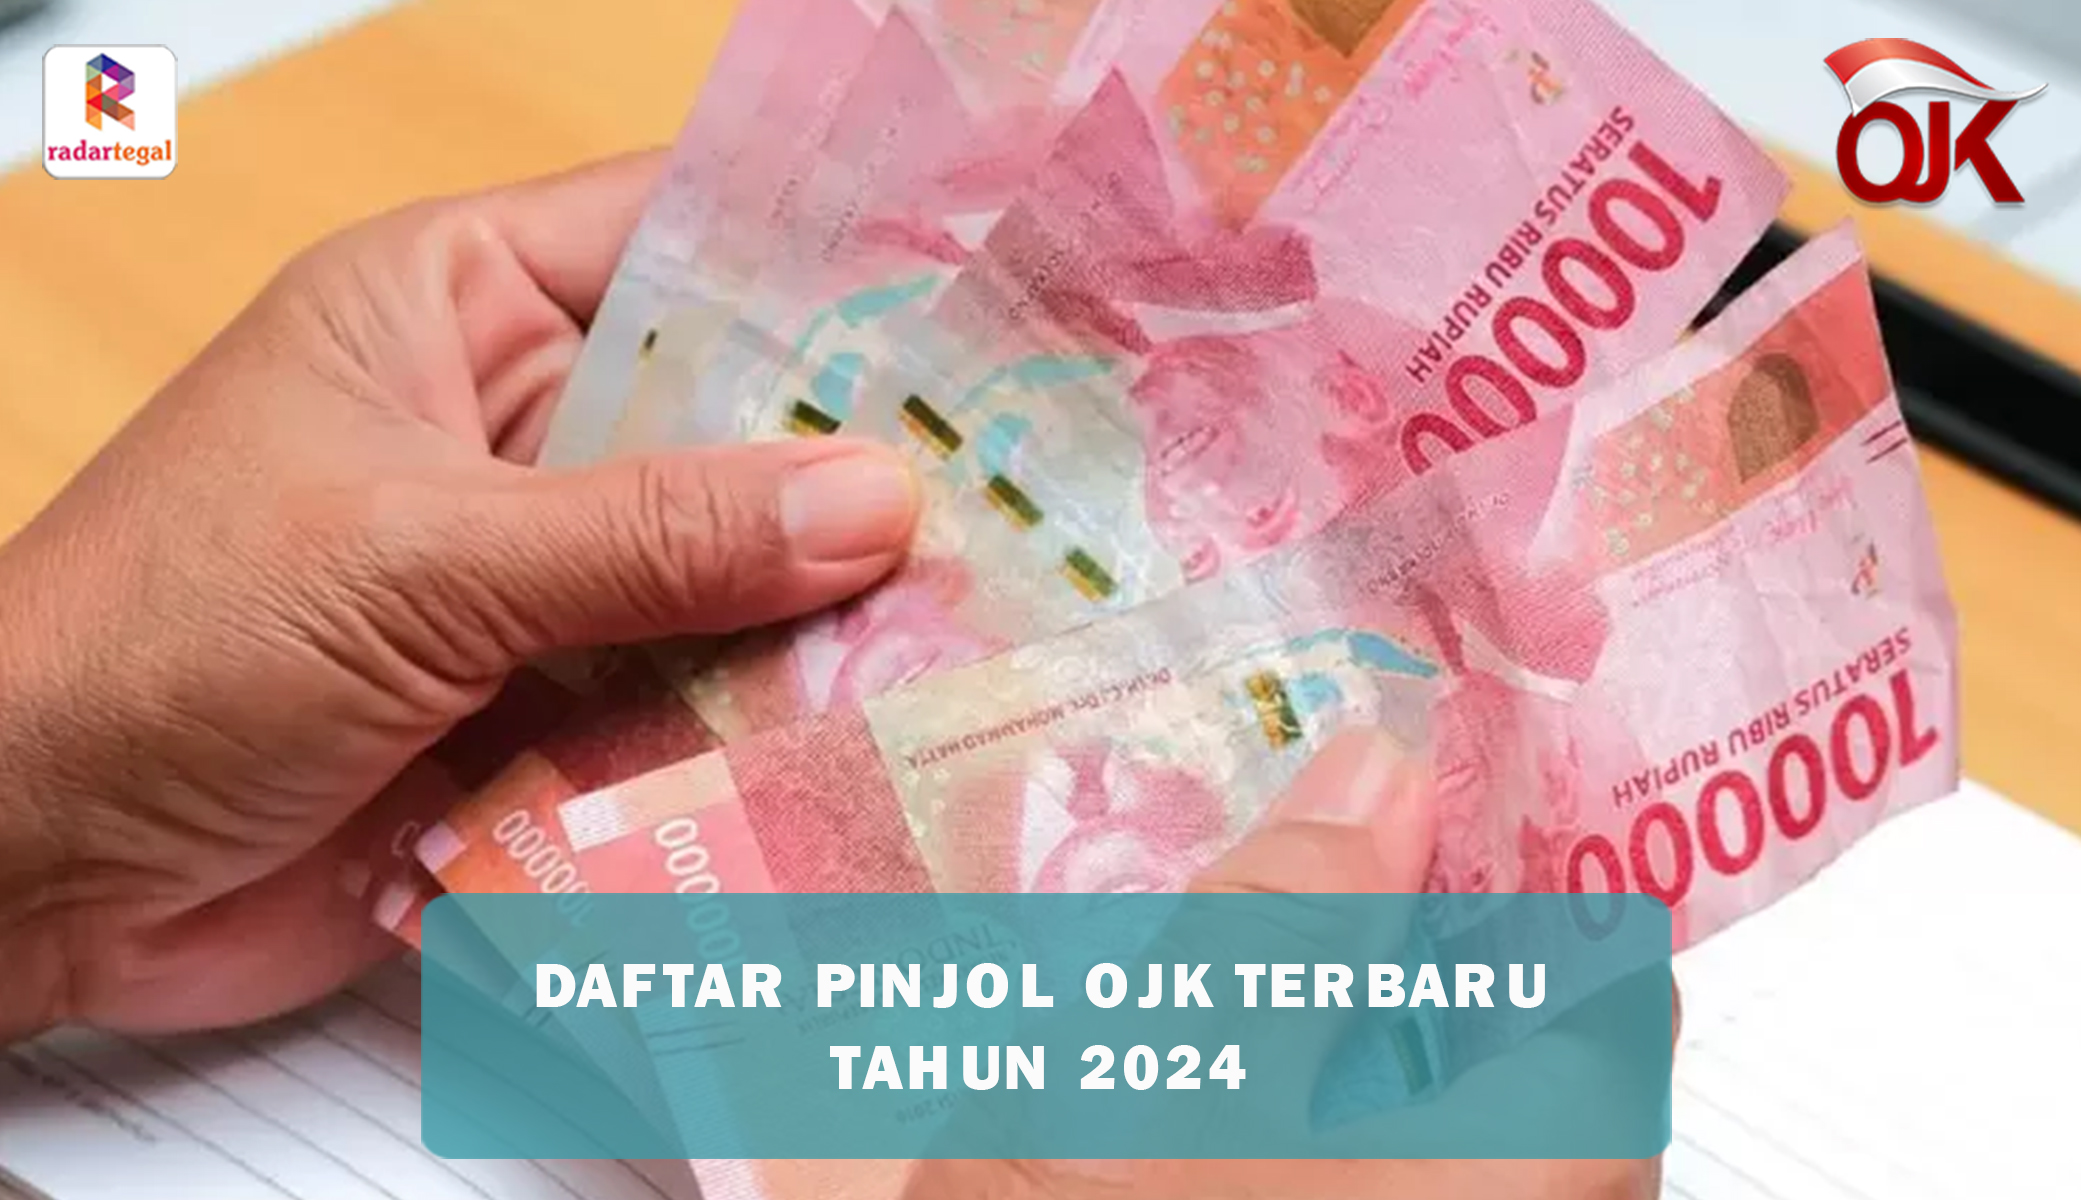 Daftar Pinjol OJK Terbaru 2024, Tawarkan Pinjaman hingga 20 Juta dengan Cicilan Ringan